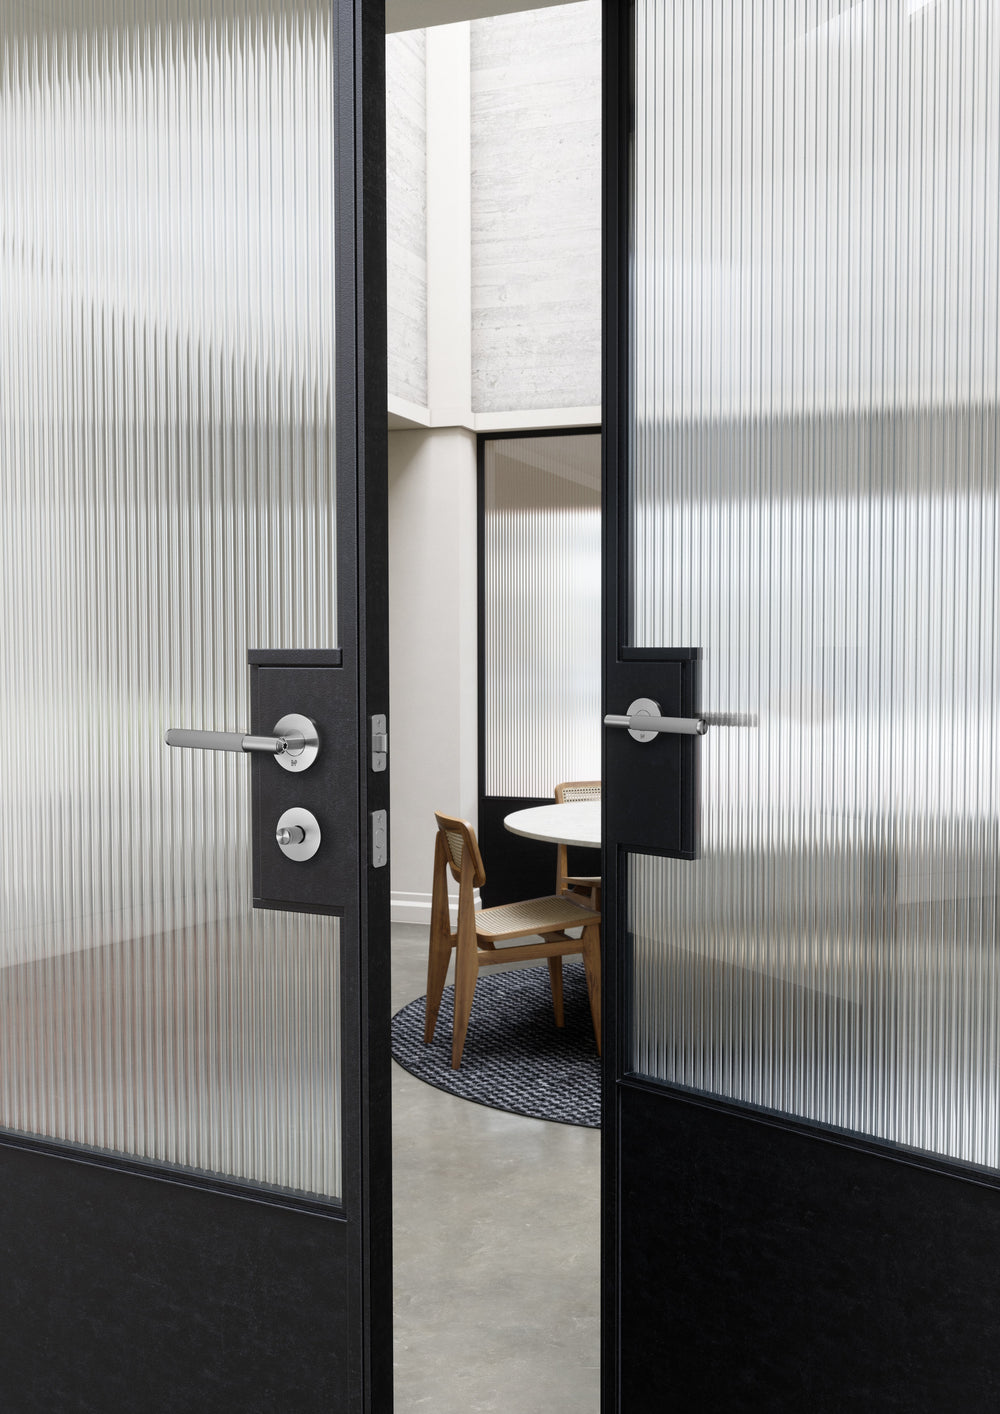 Låsvred i rostfritt stål i en exklusiv design med linjerat mönster. Här visas låsvredet monterat på en dörr tillsammans med matchande dörrhandtag som också kommer från Buster + Punch.